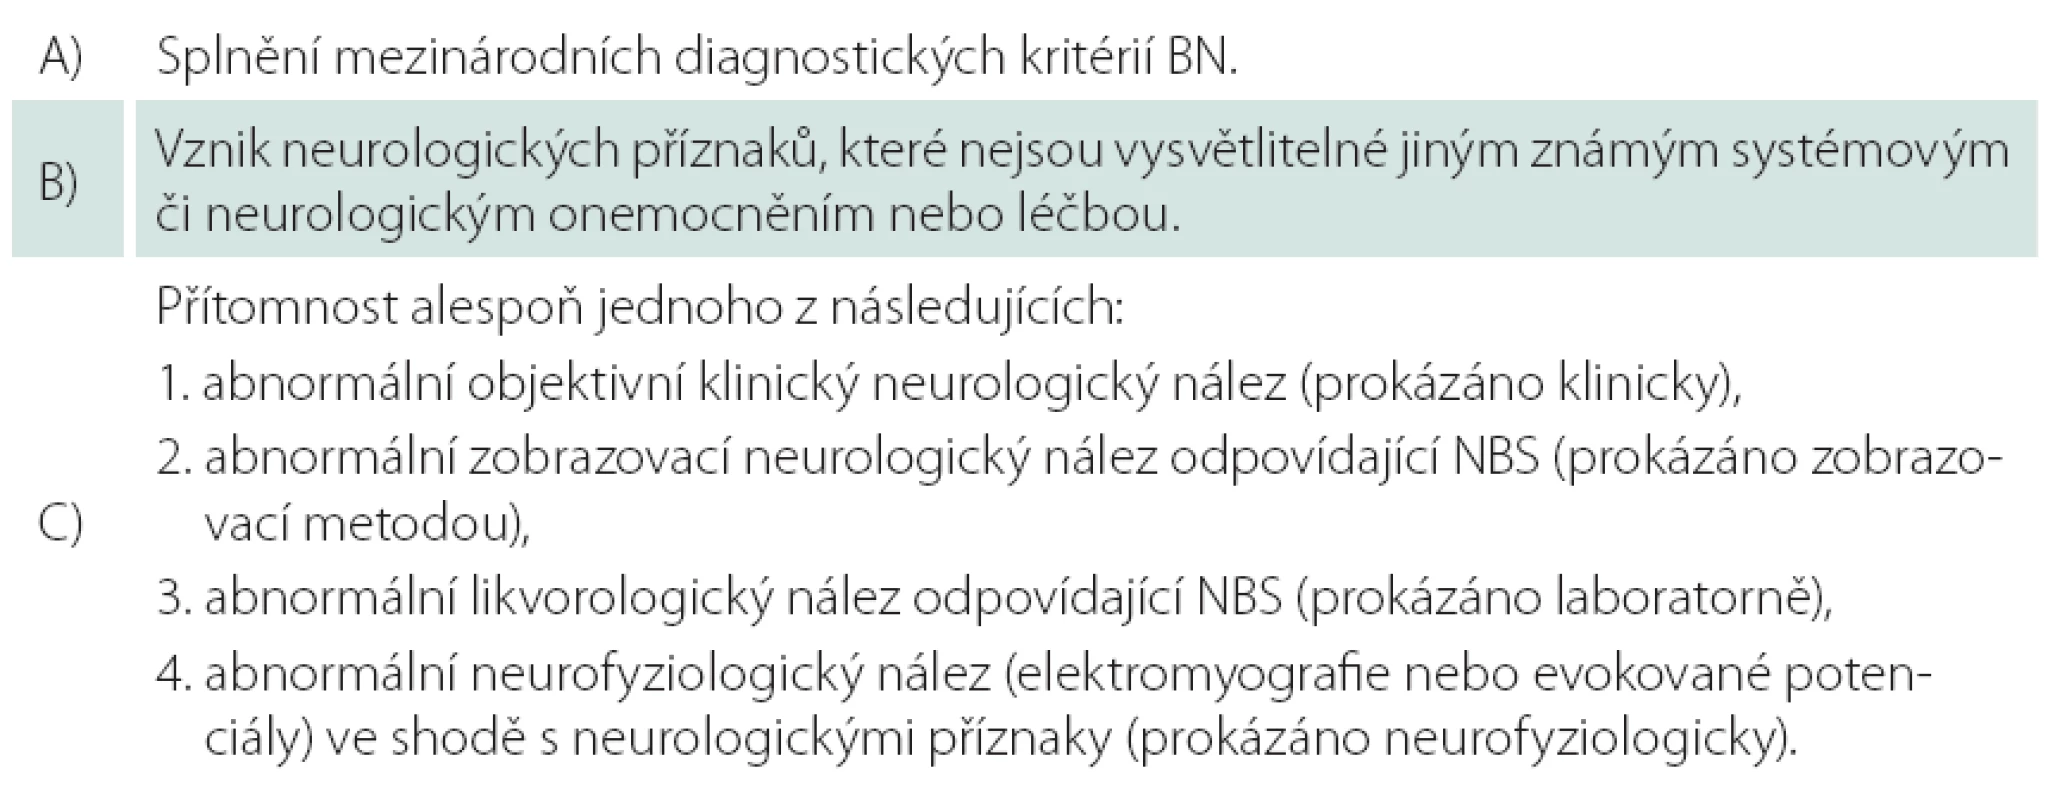 Diagnostická kritéria neuro-Behçetova syndromu (NBS) navržená Sivou a Saipem [11].